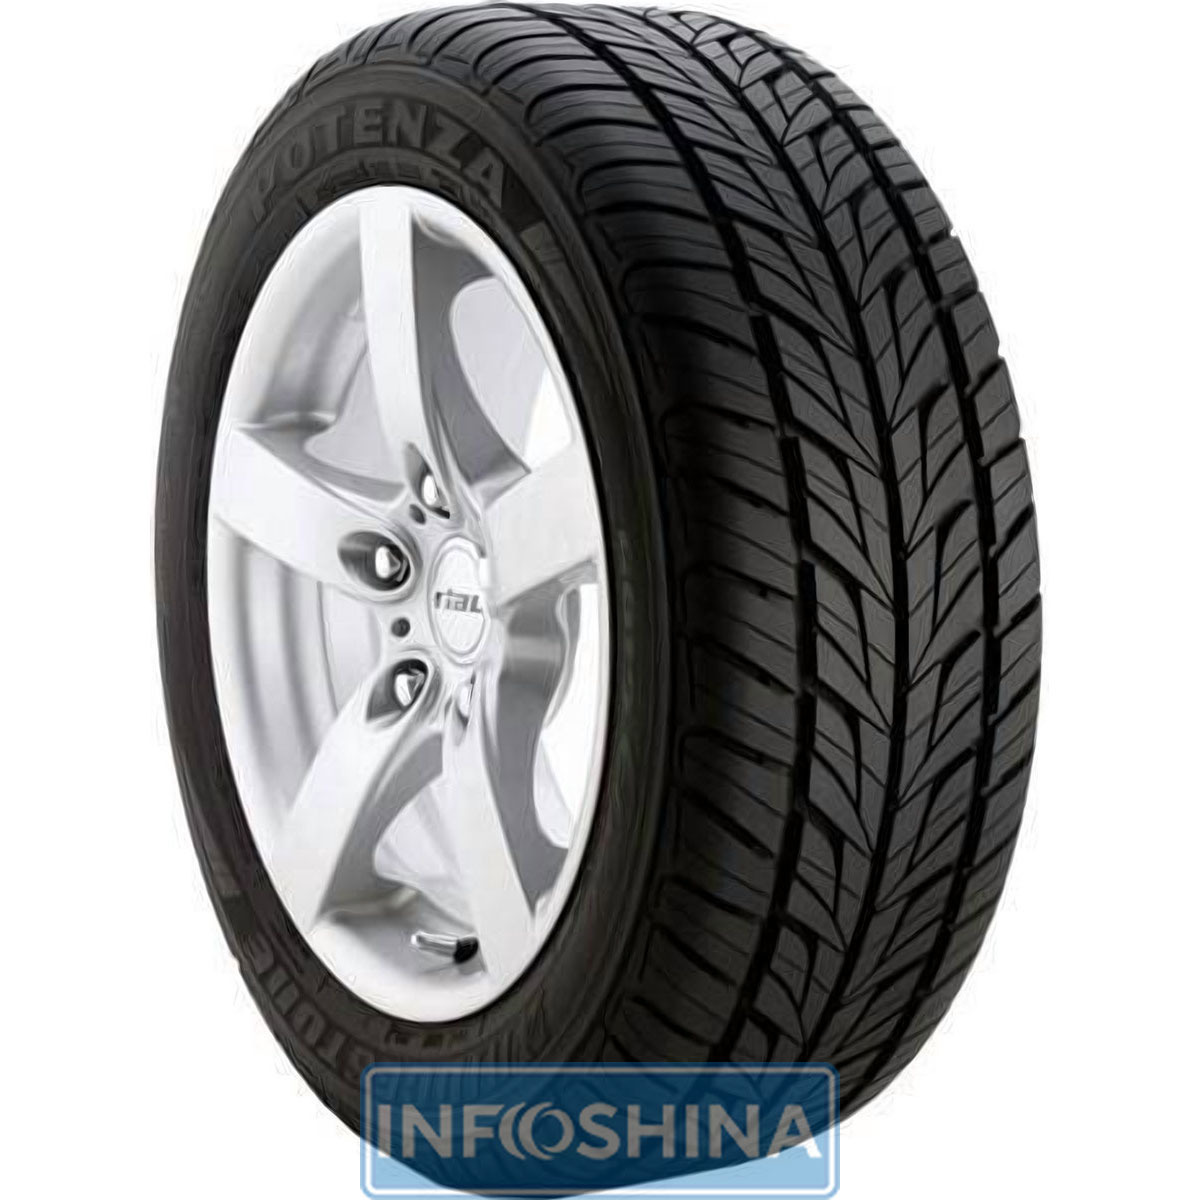 Купить шины Bridgestone Potenza G019 195/55 R16 87H